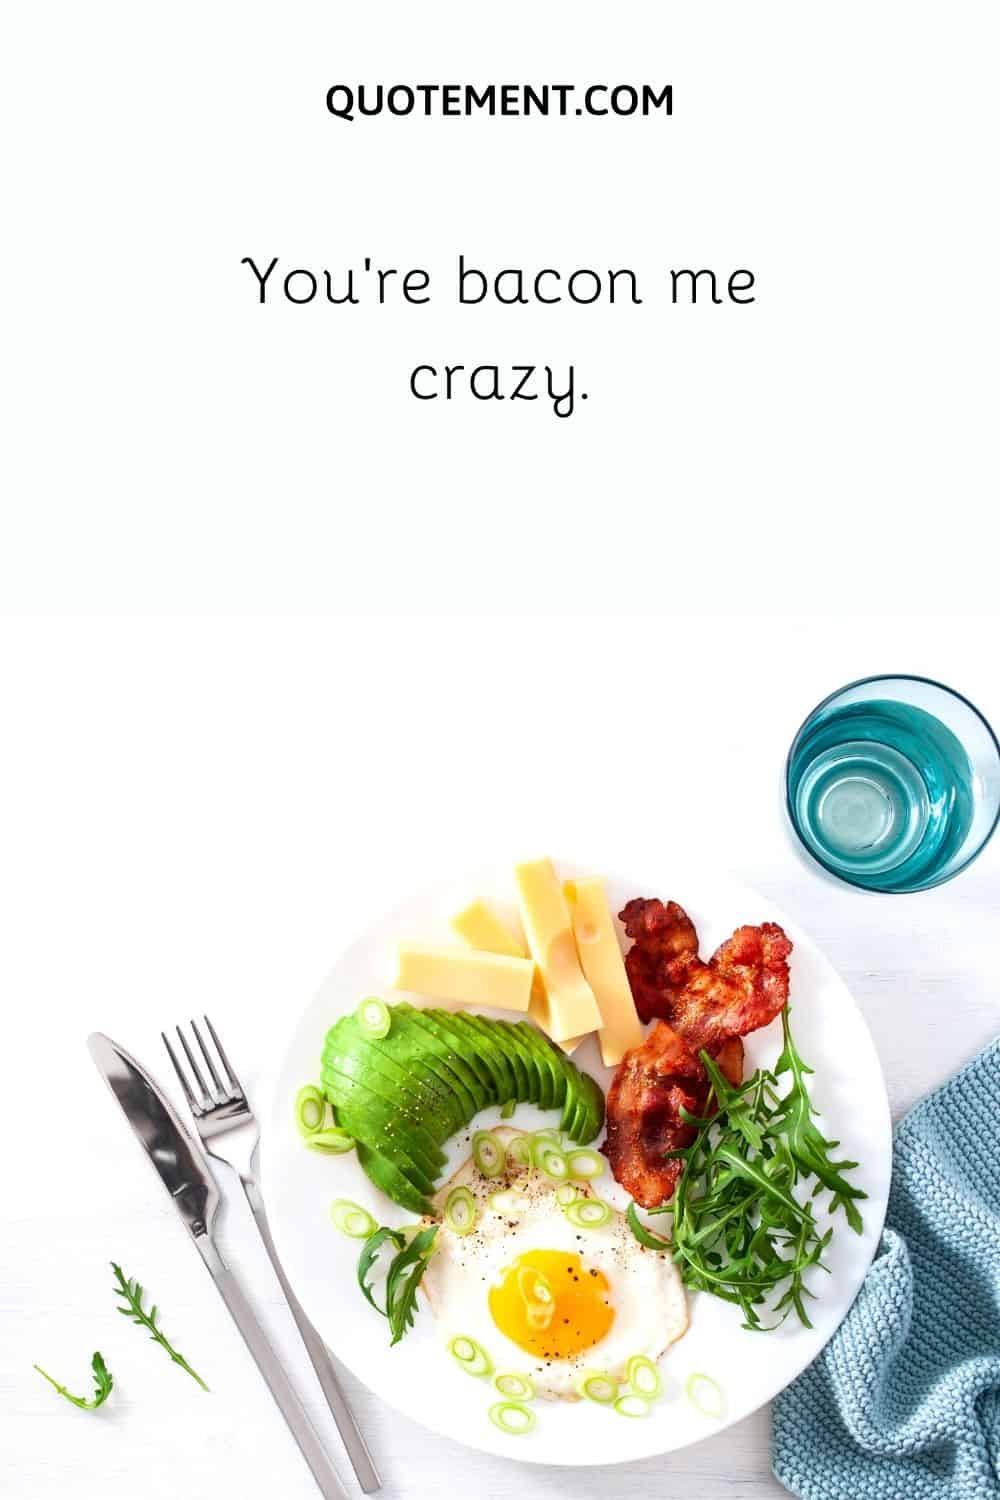 You’re bacon me crazy.